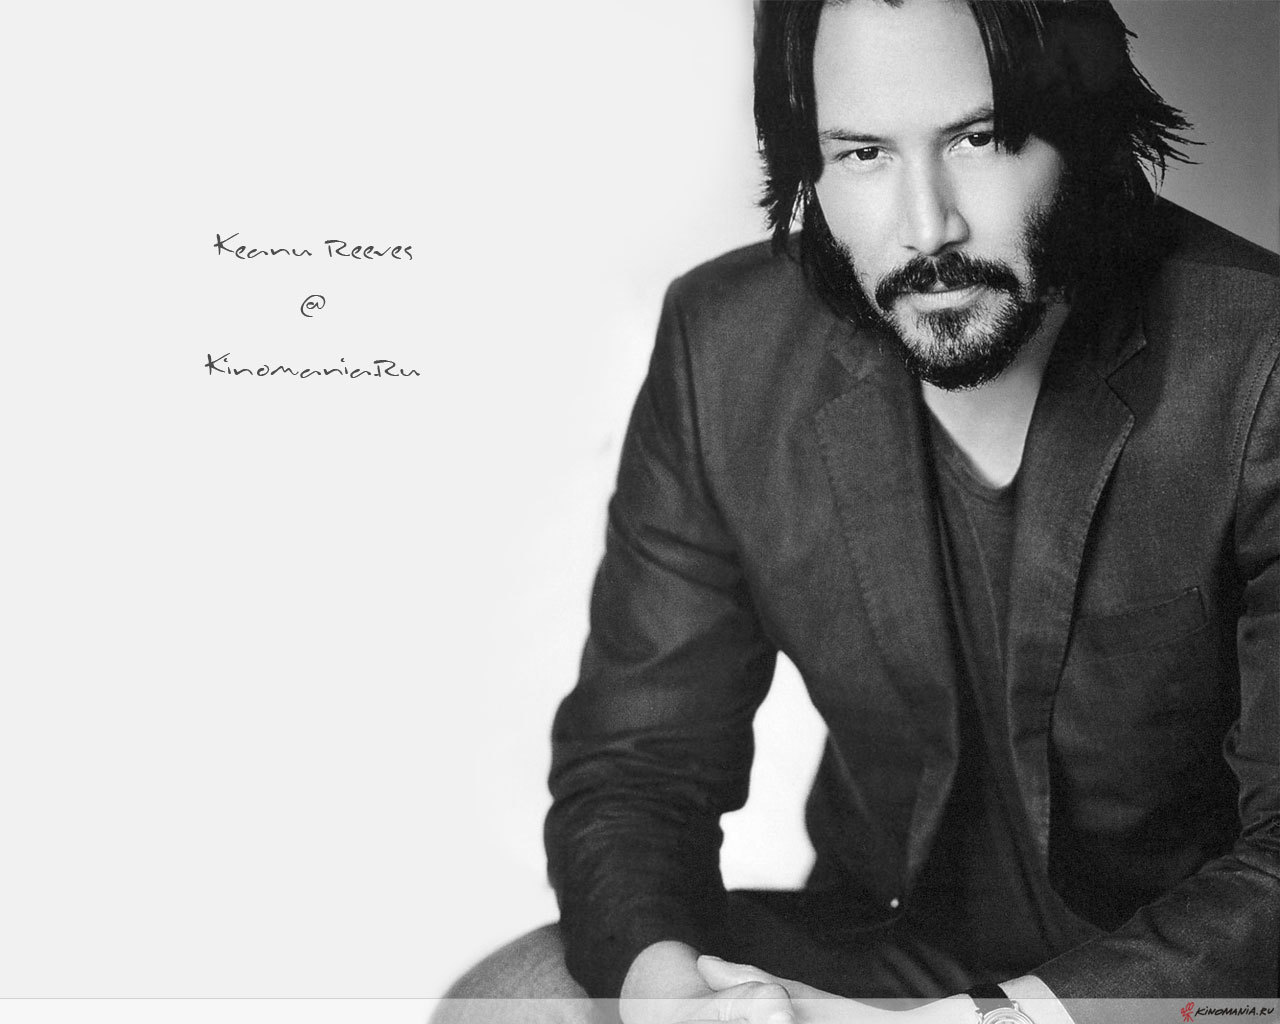 74+] Keanu Reeves Wallpapers - WallpaperSafari